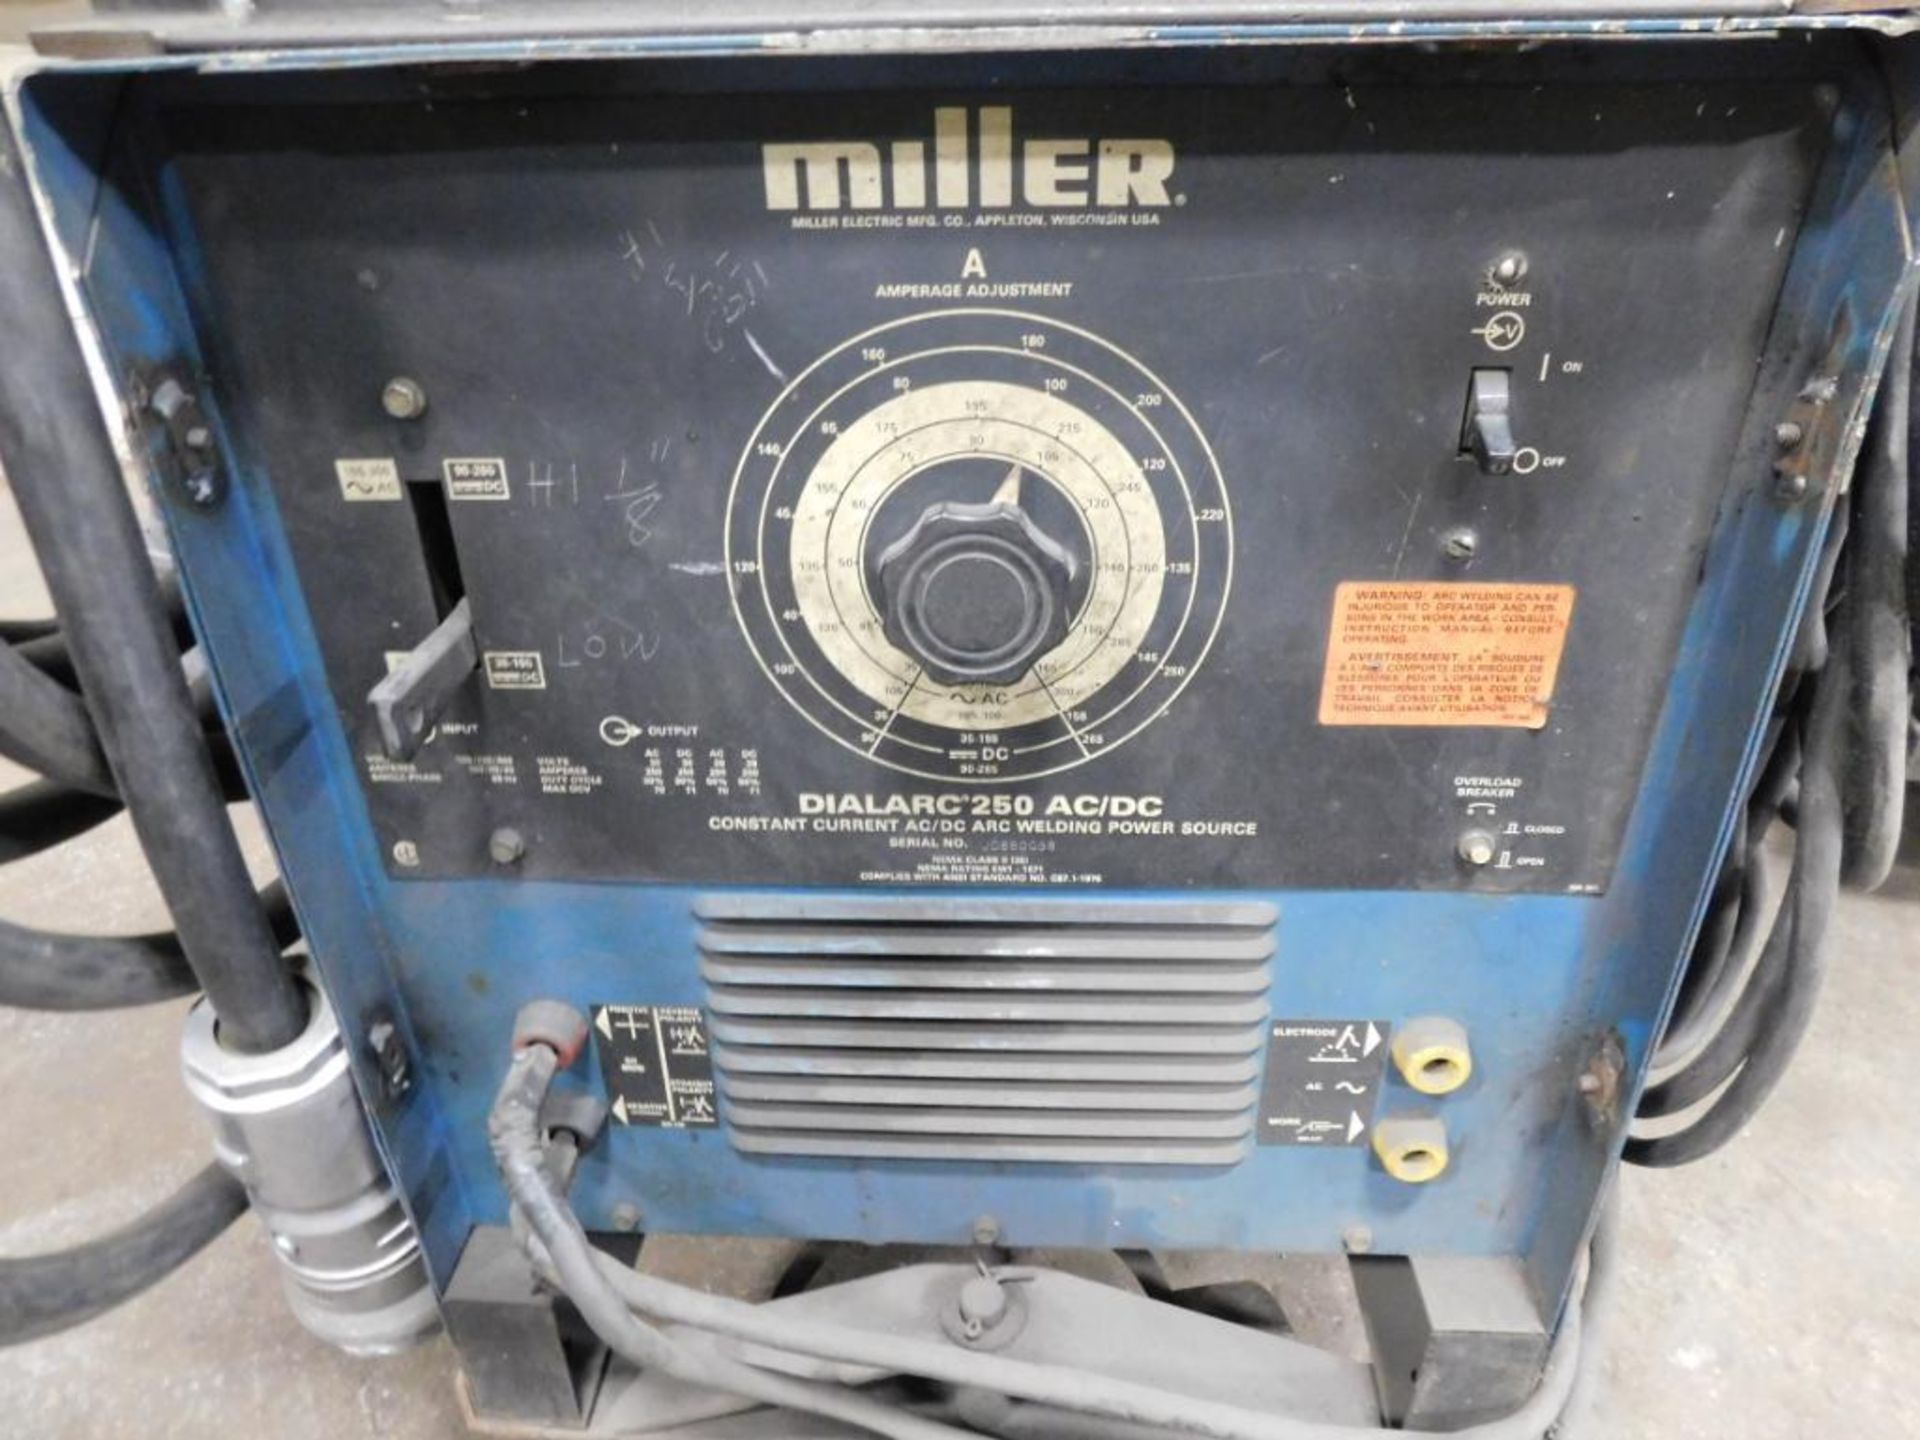 Miller 200 Amp Stick Welder Model Dialarc 250, Cables, Cart - Image 2 of 2